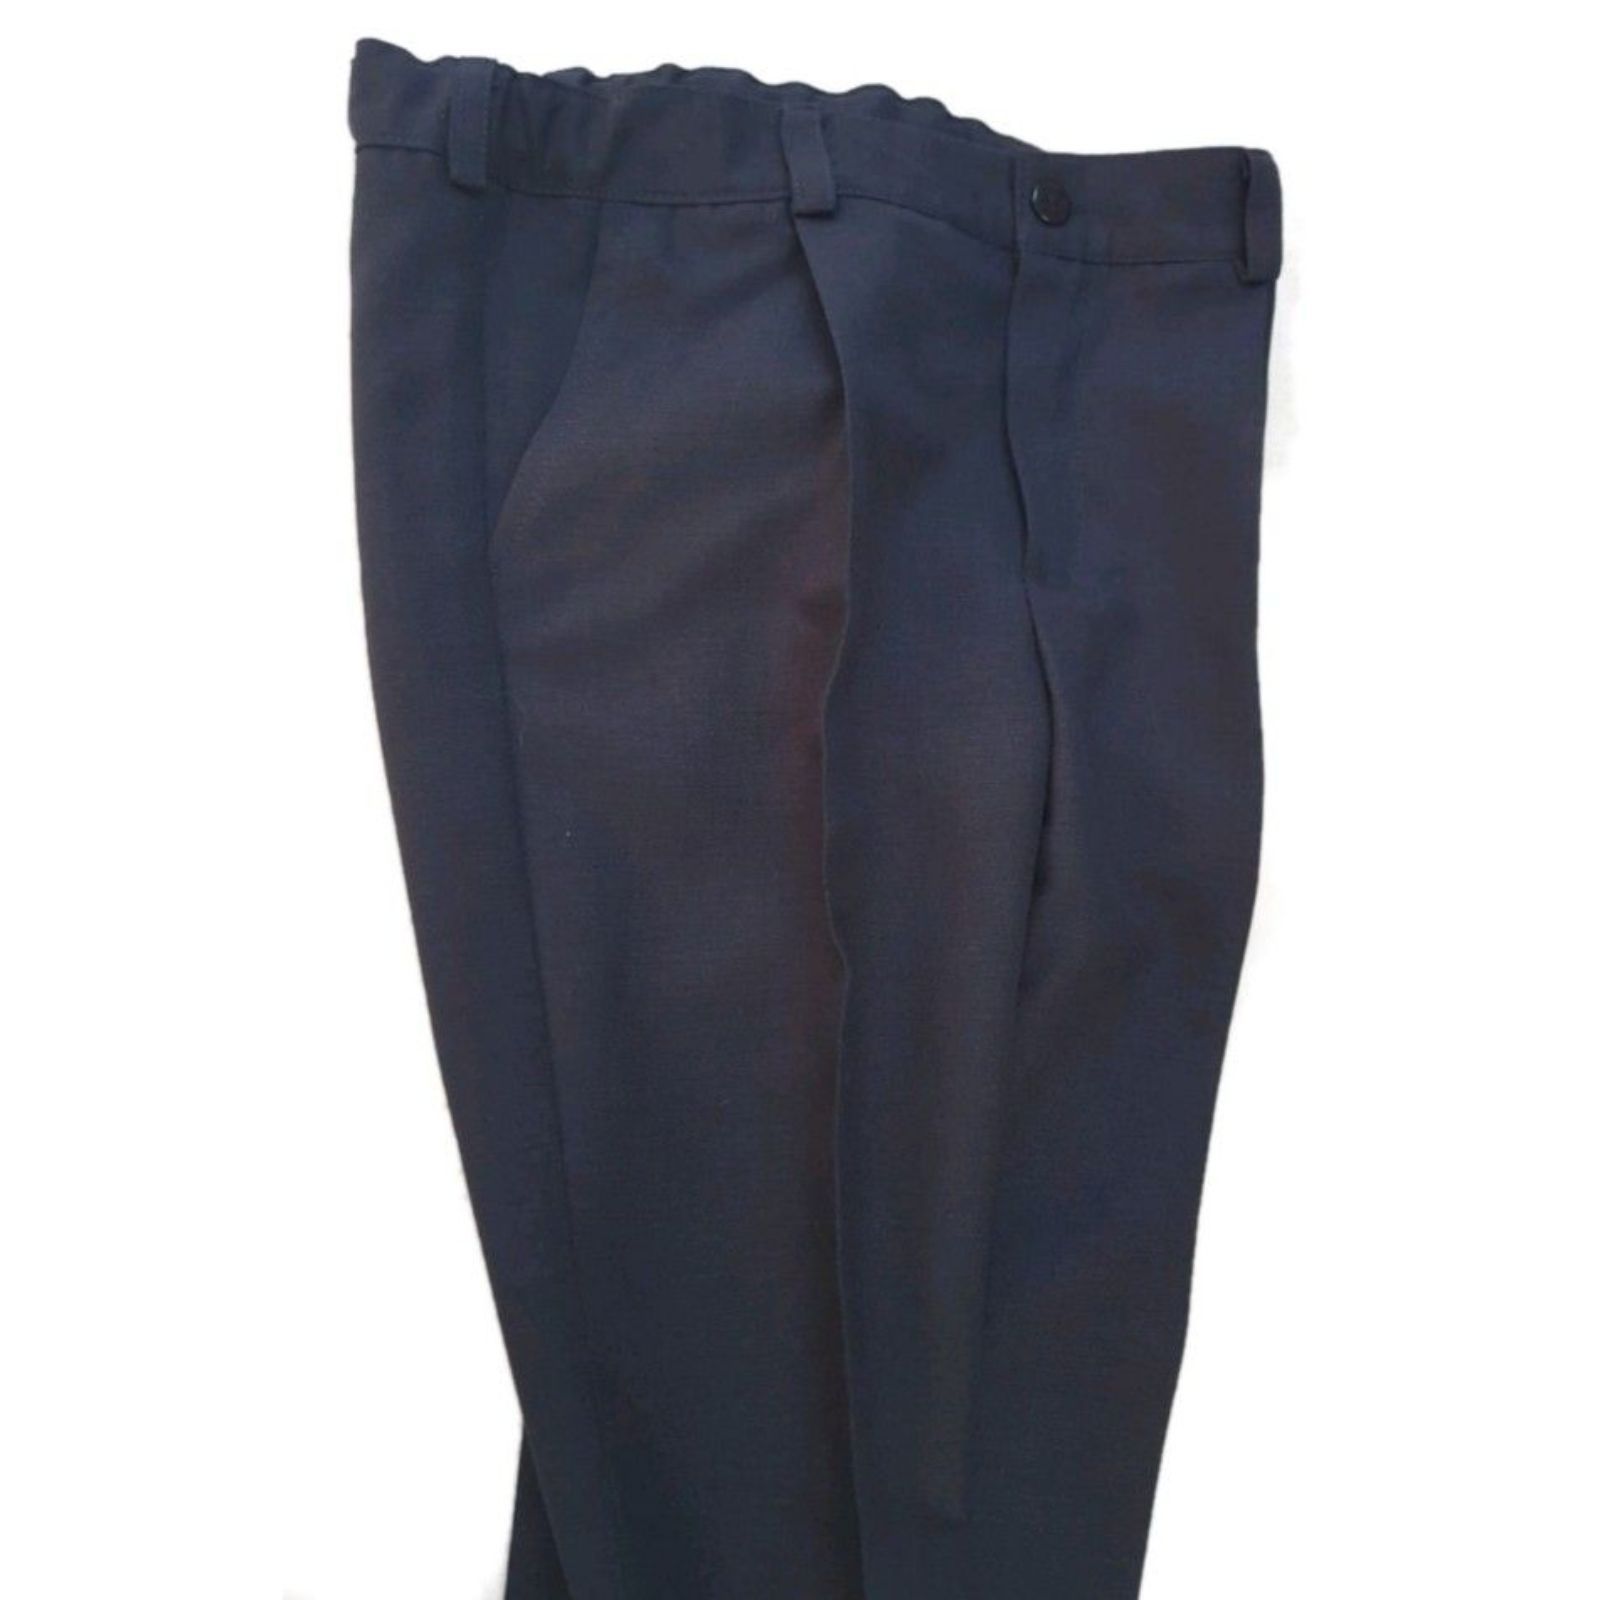 Pantaloni uniformă școlară - set două bucăți